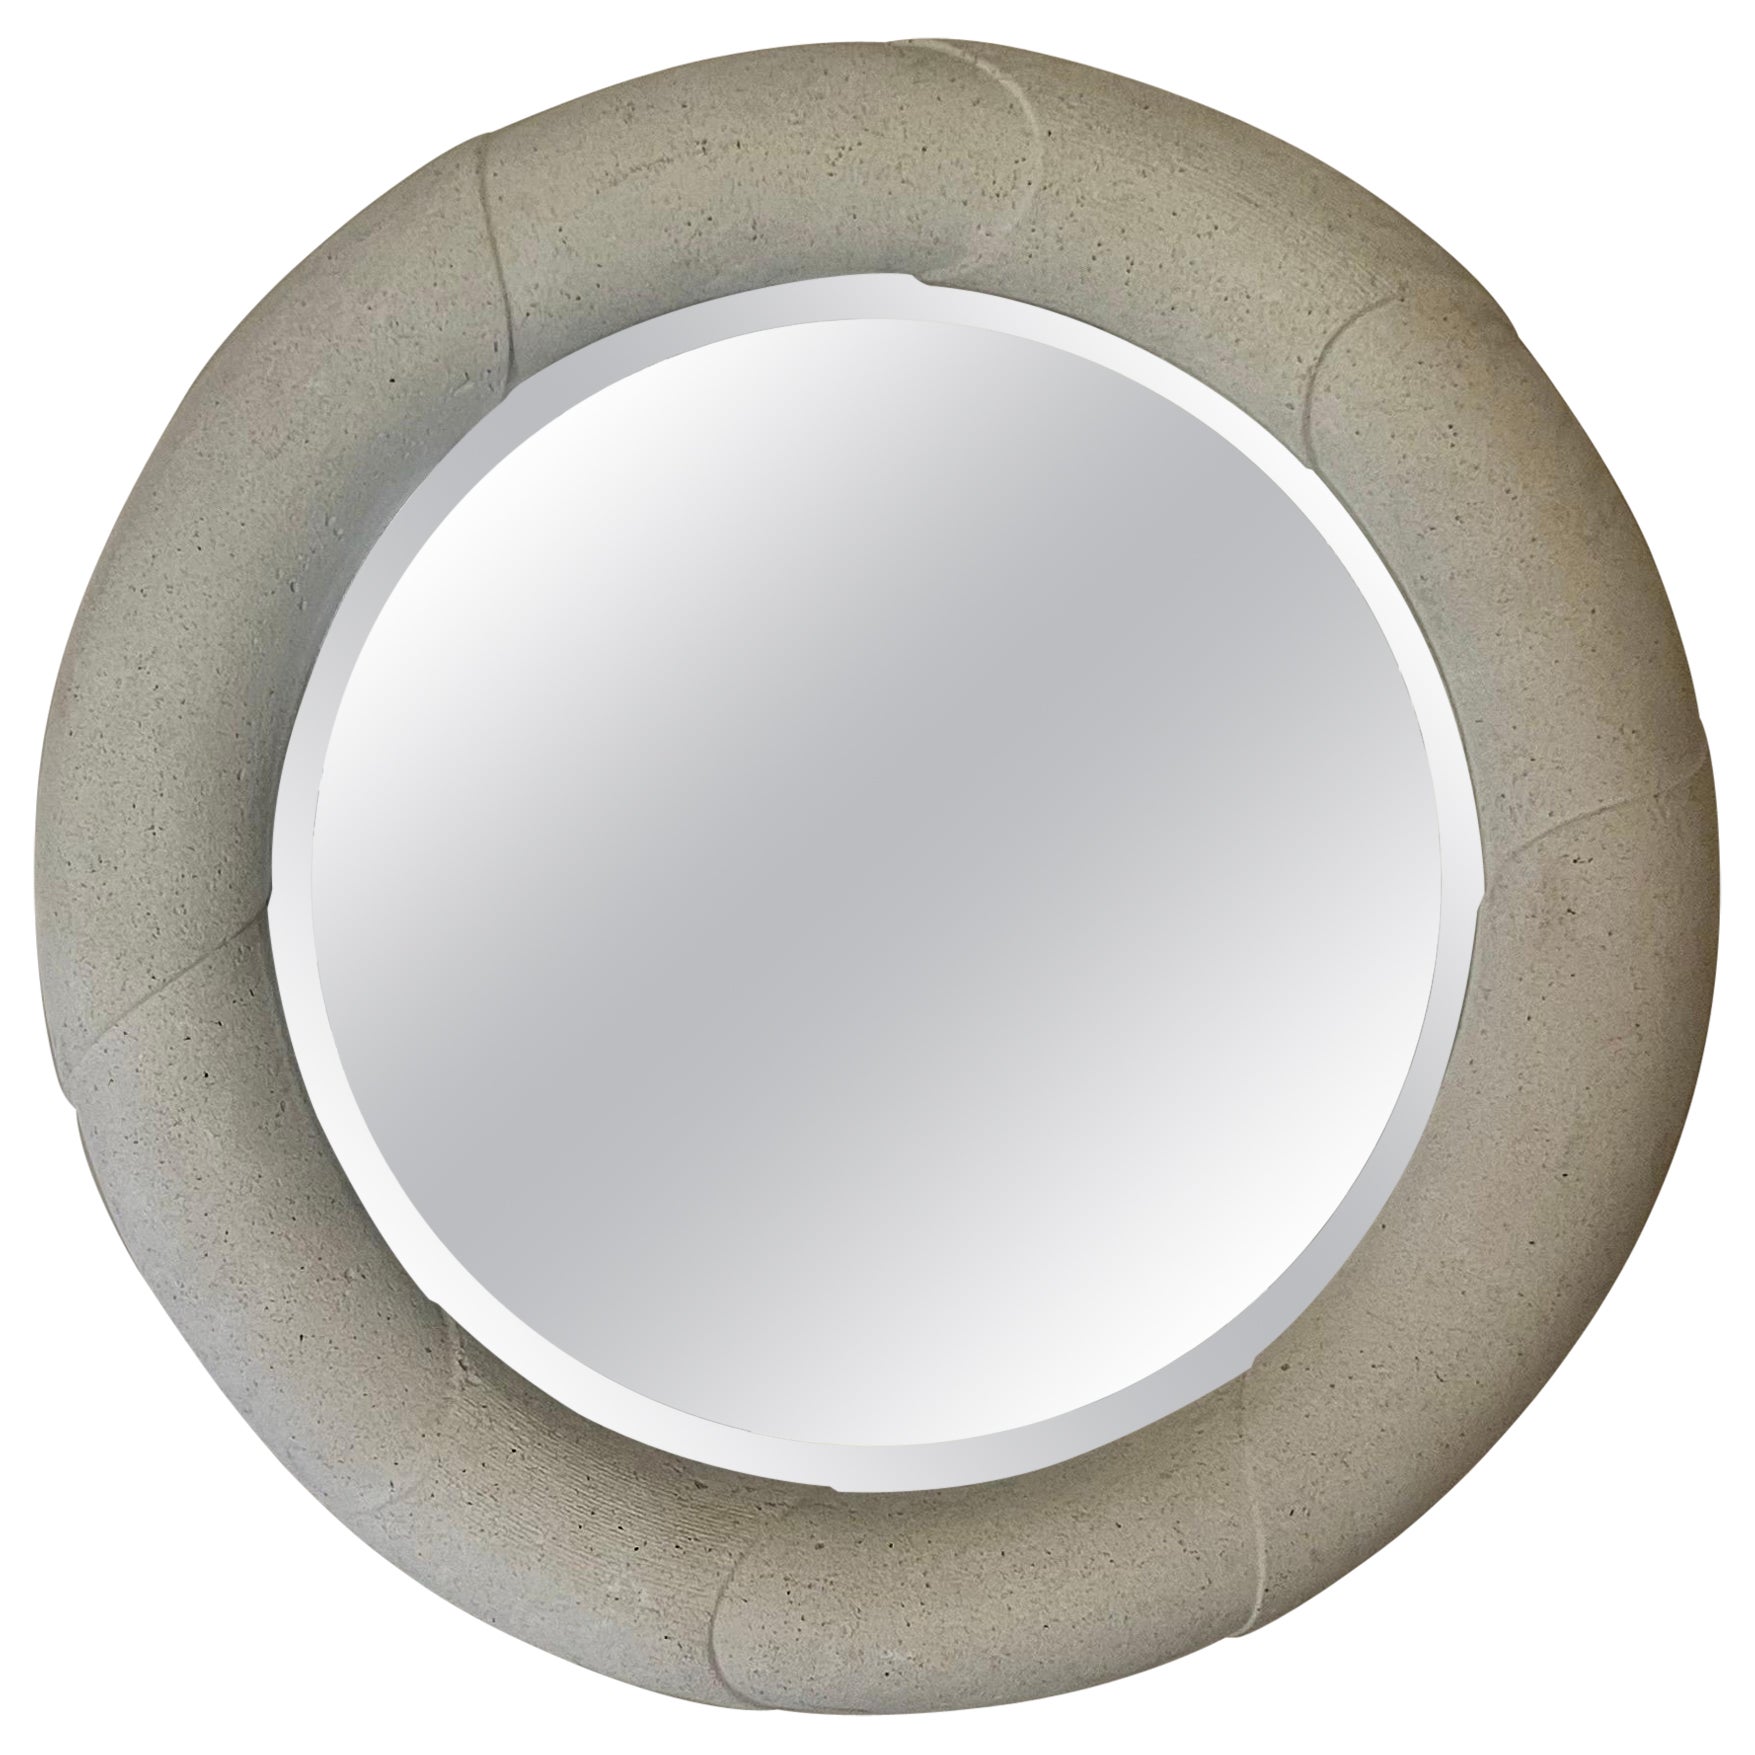 Karl Springer Style Round Plaster Mirror